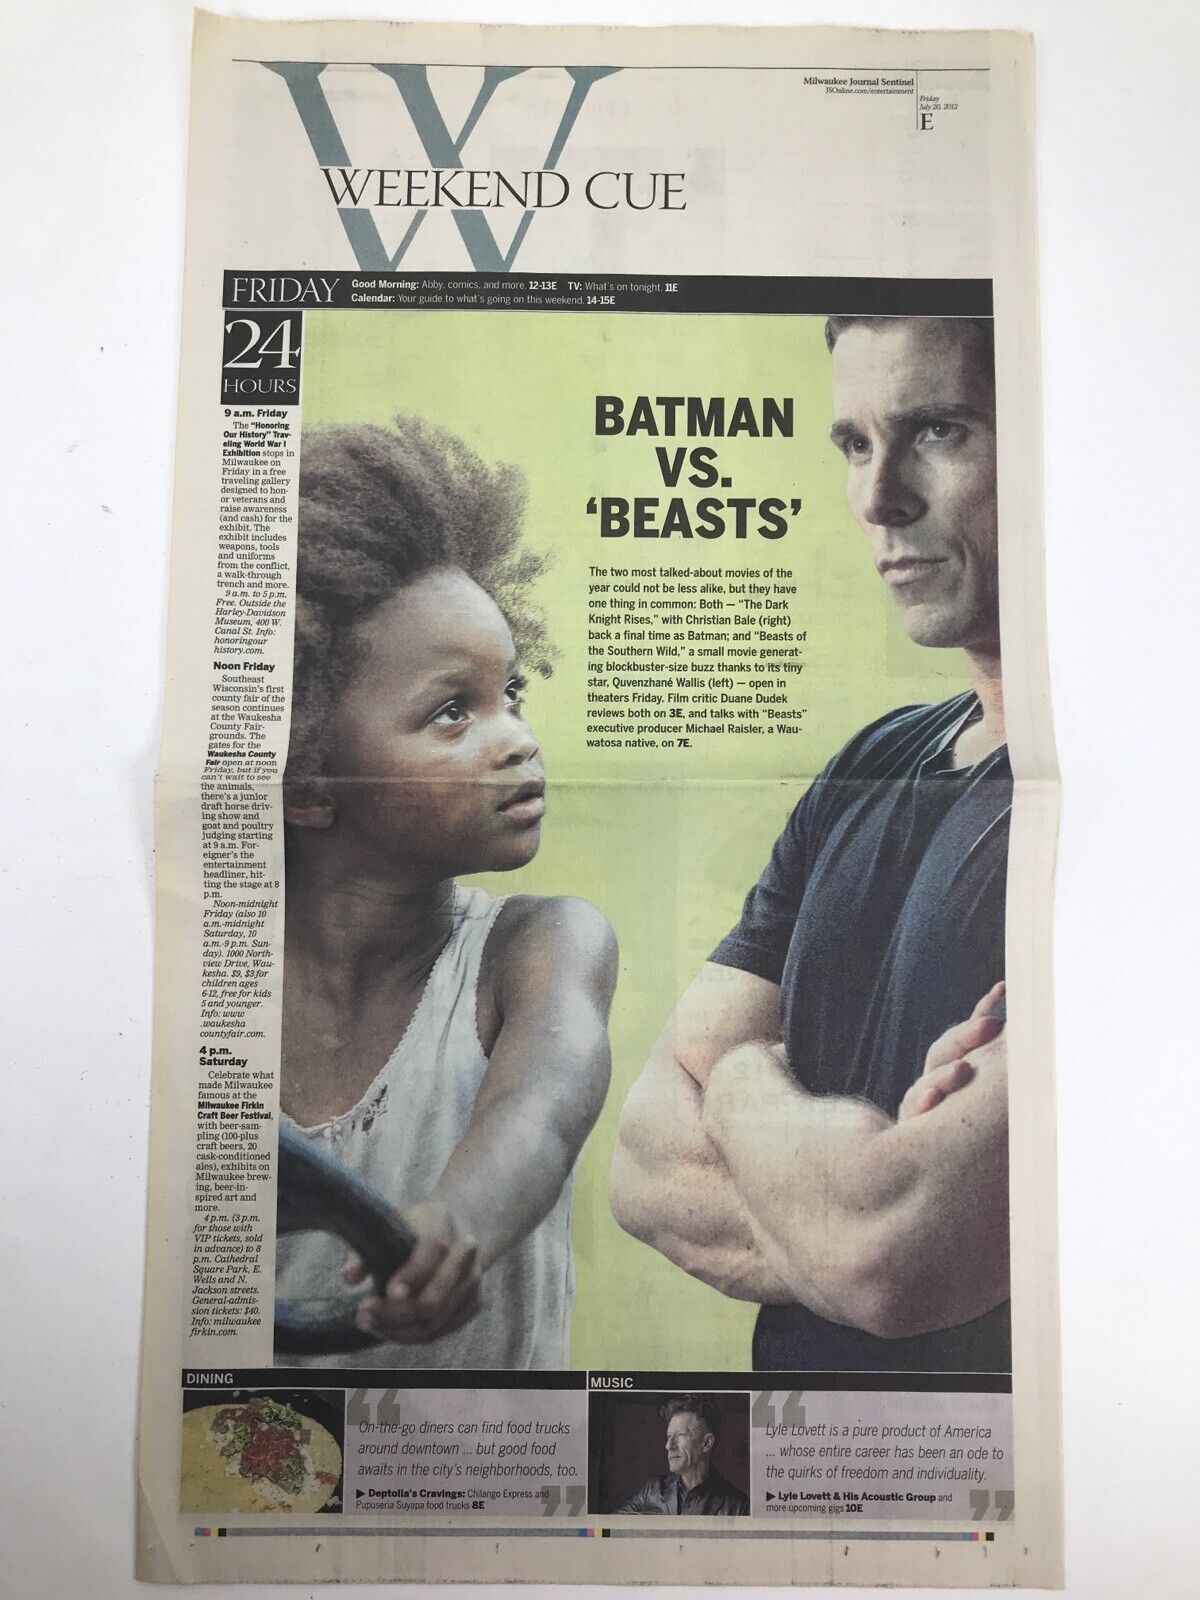 BATMAN Vs Beasts Milwaukee Journal Sentinel Weekend Cue Newspaper July 20, 2012